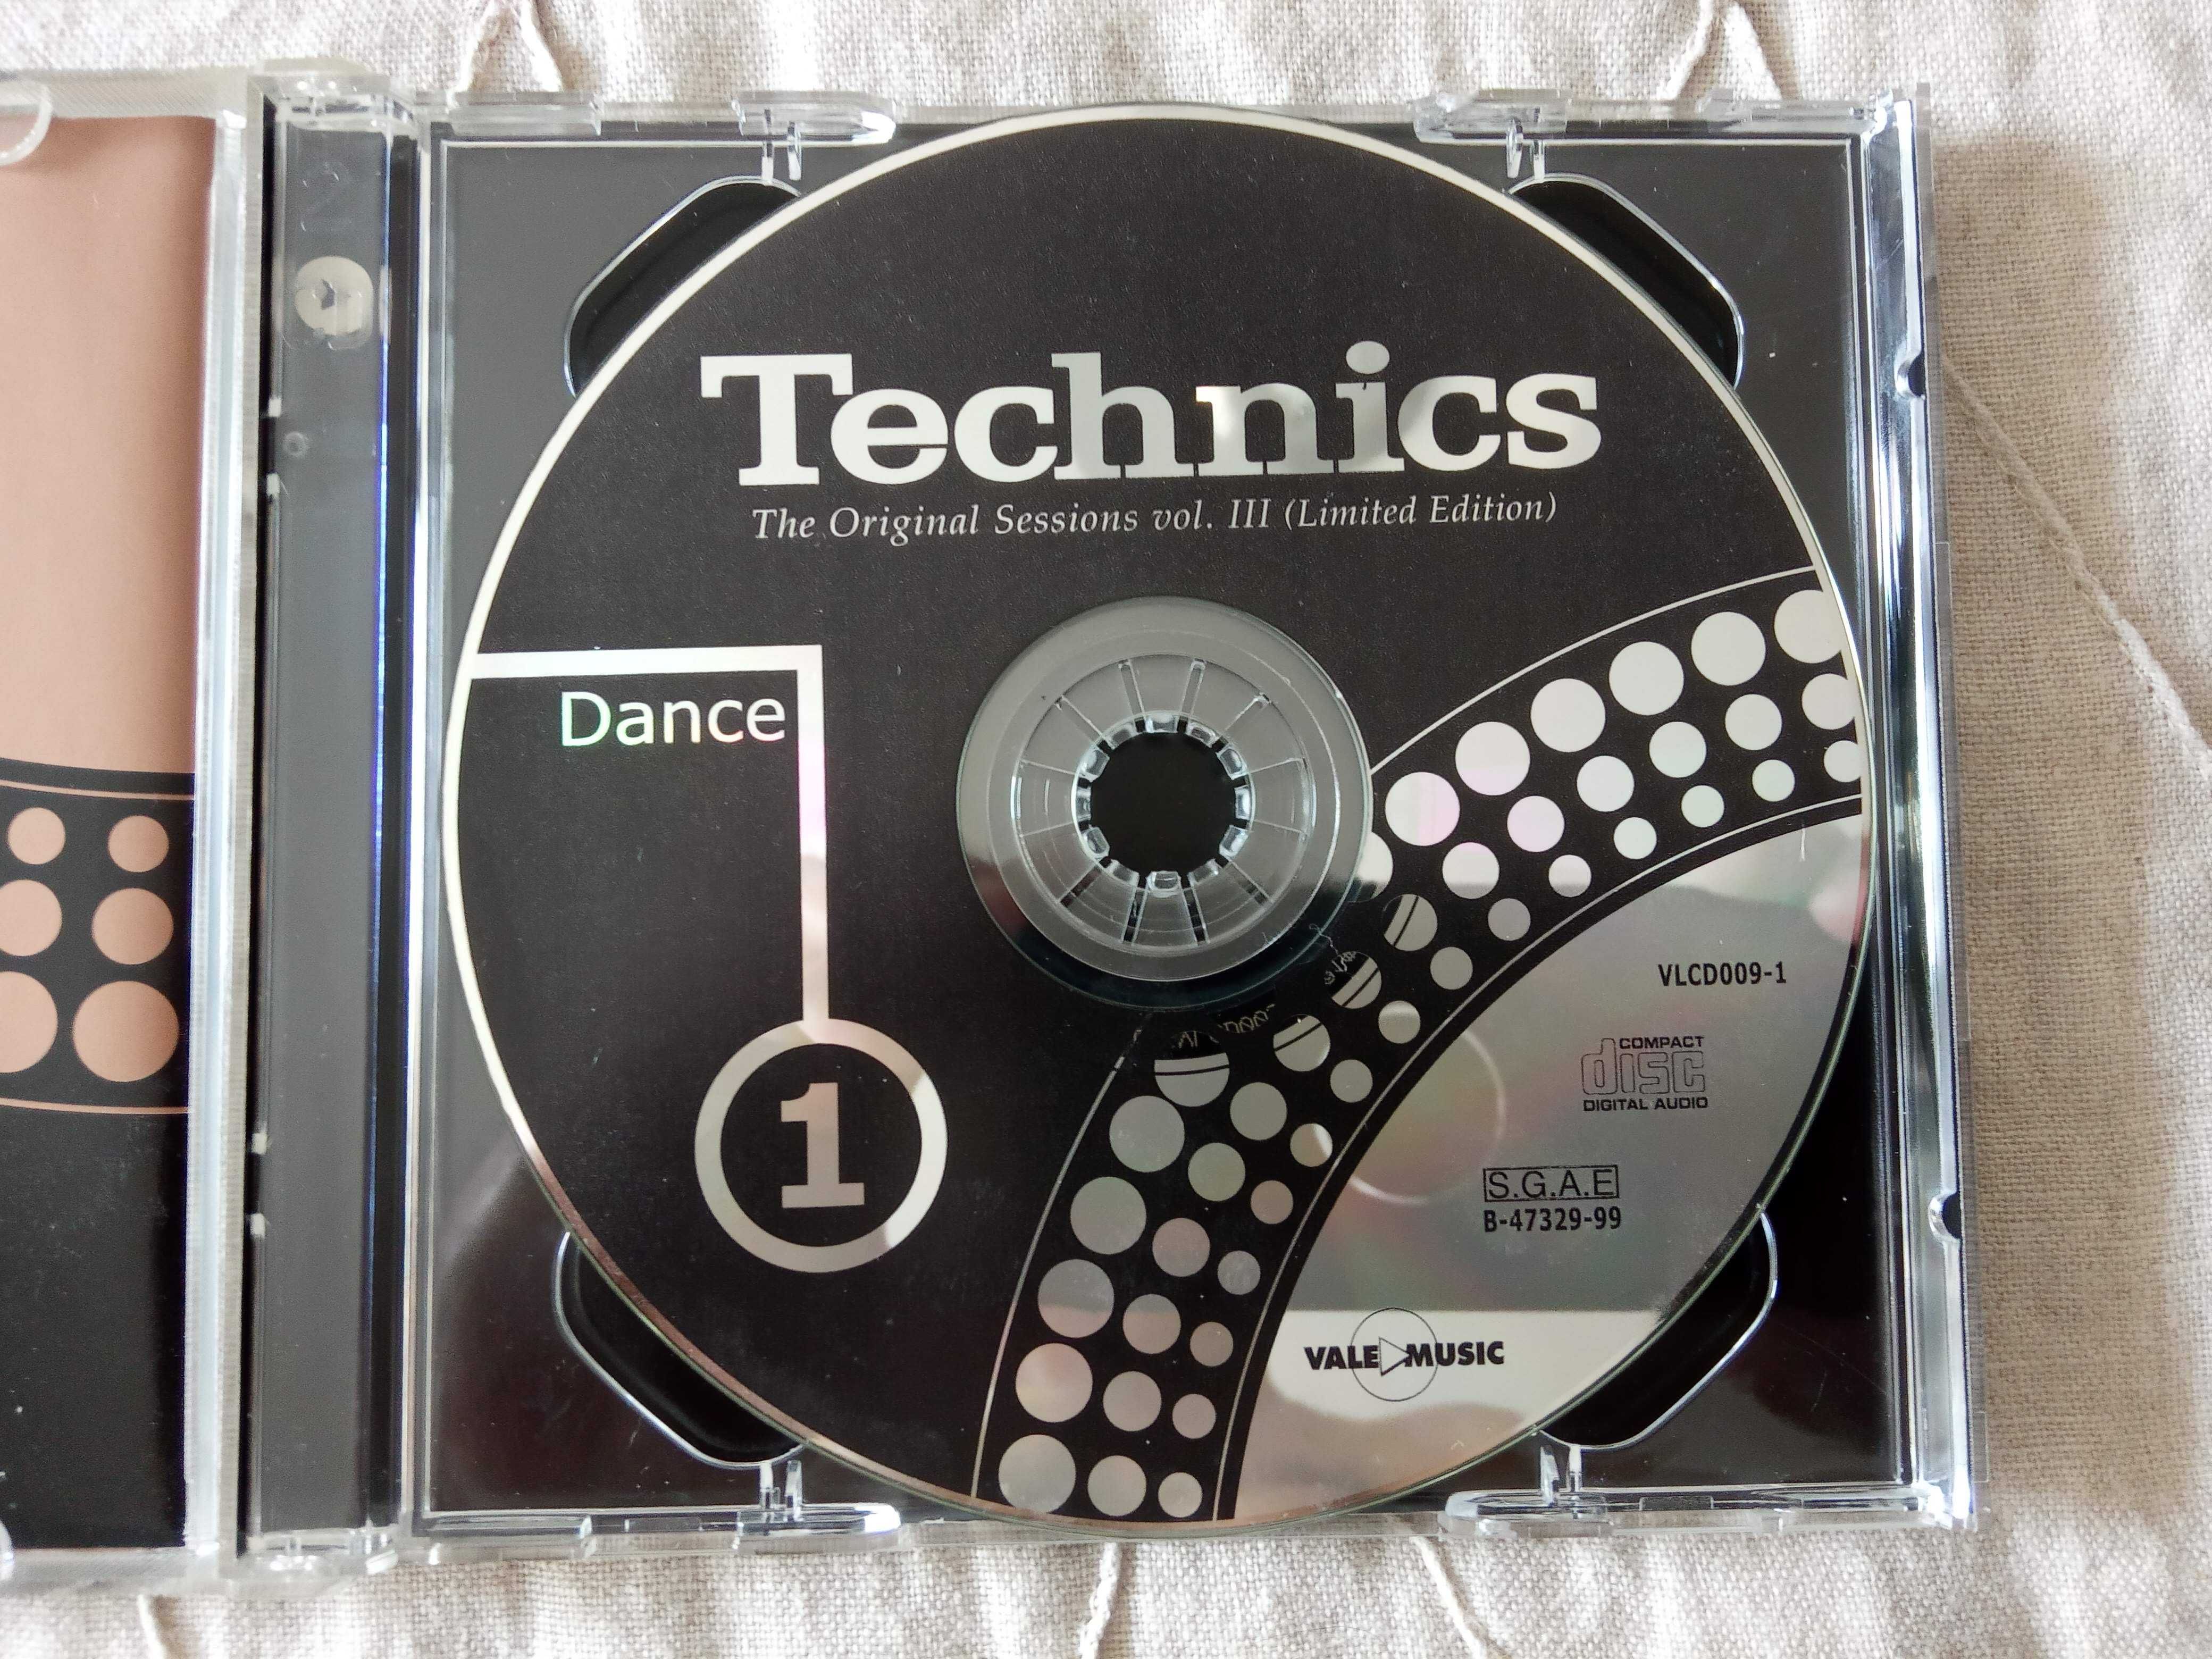 Technics: The Original Sessions Vol. III - 4 CDs